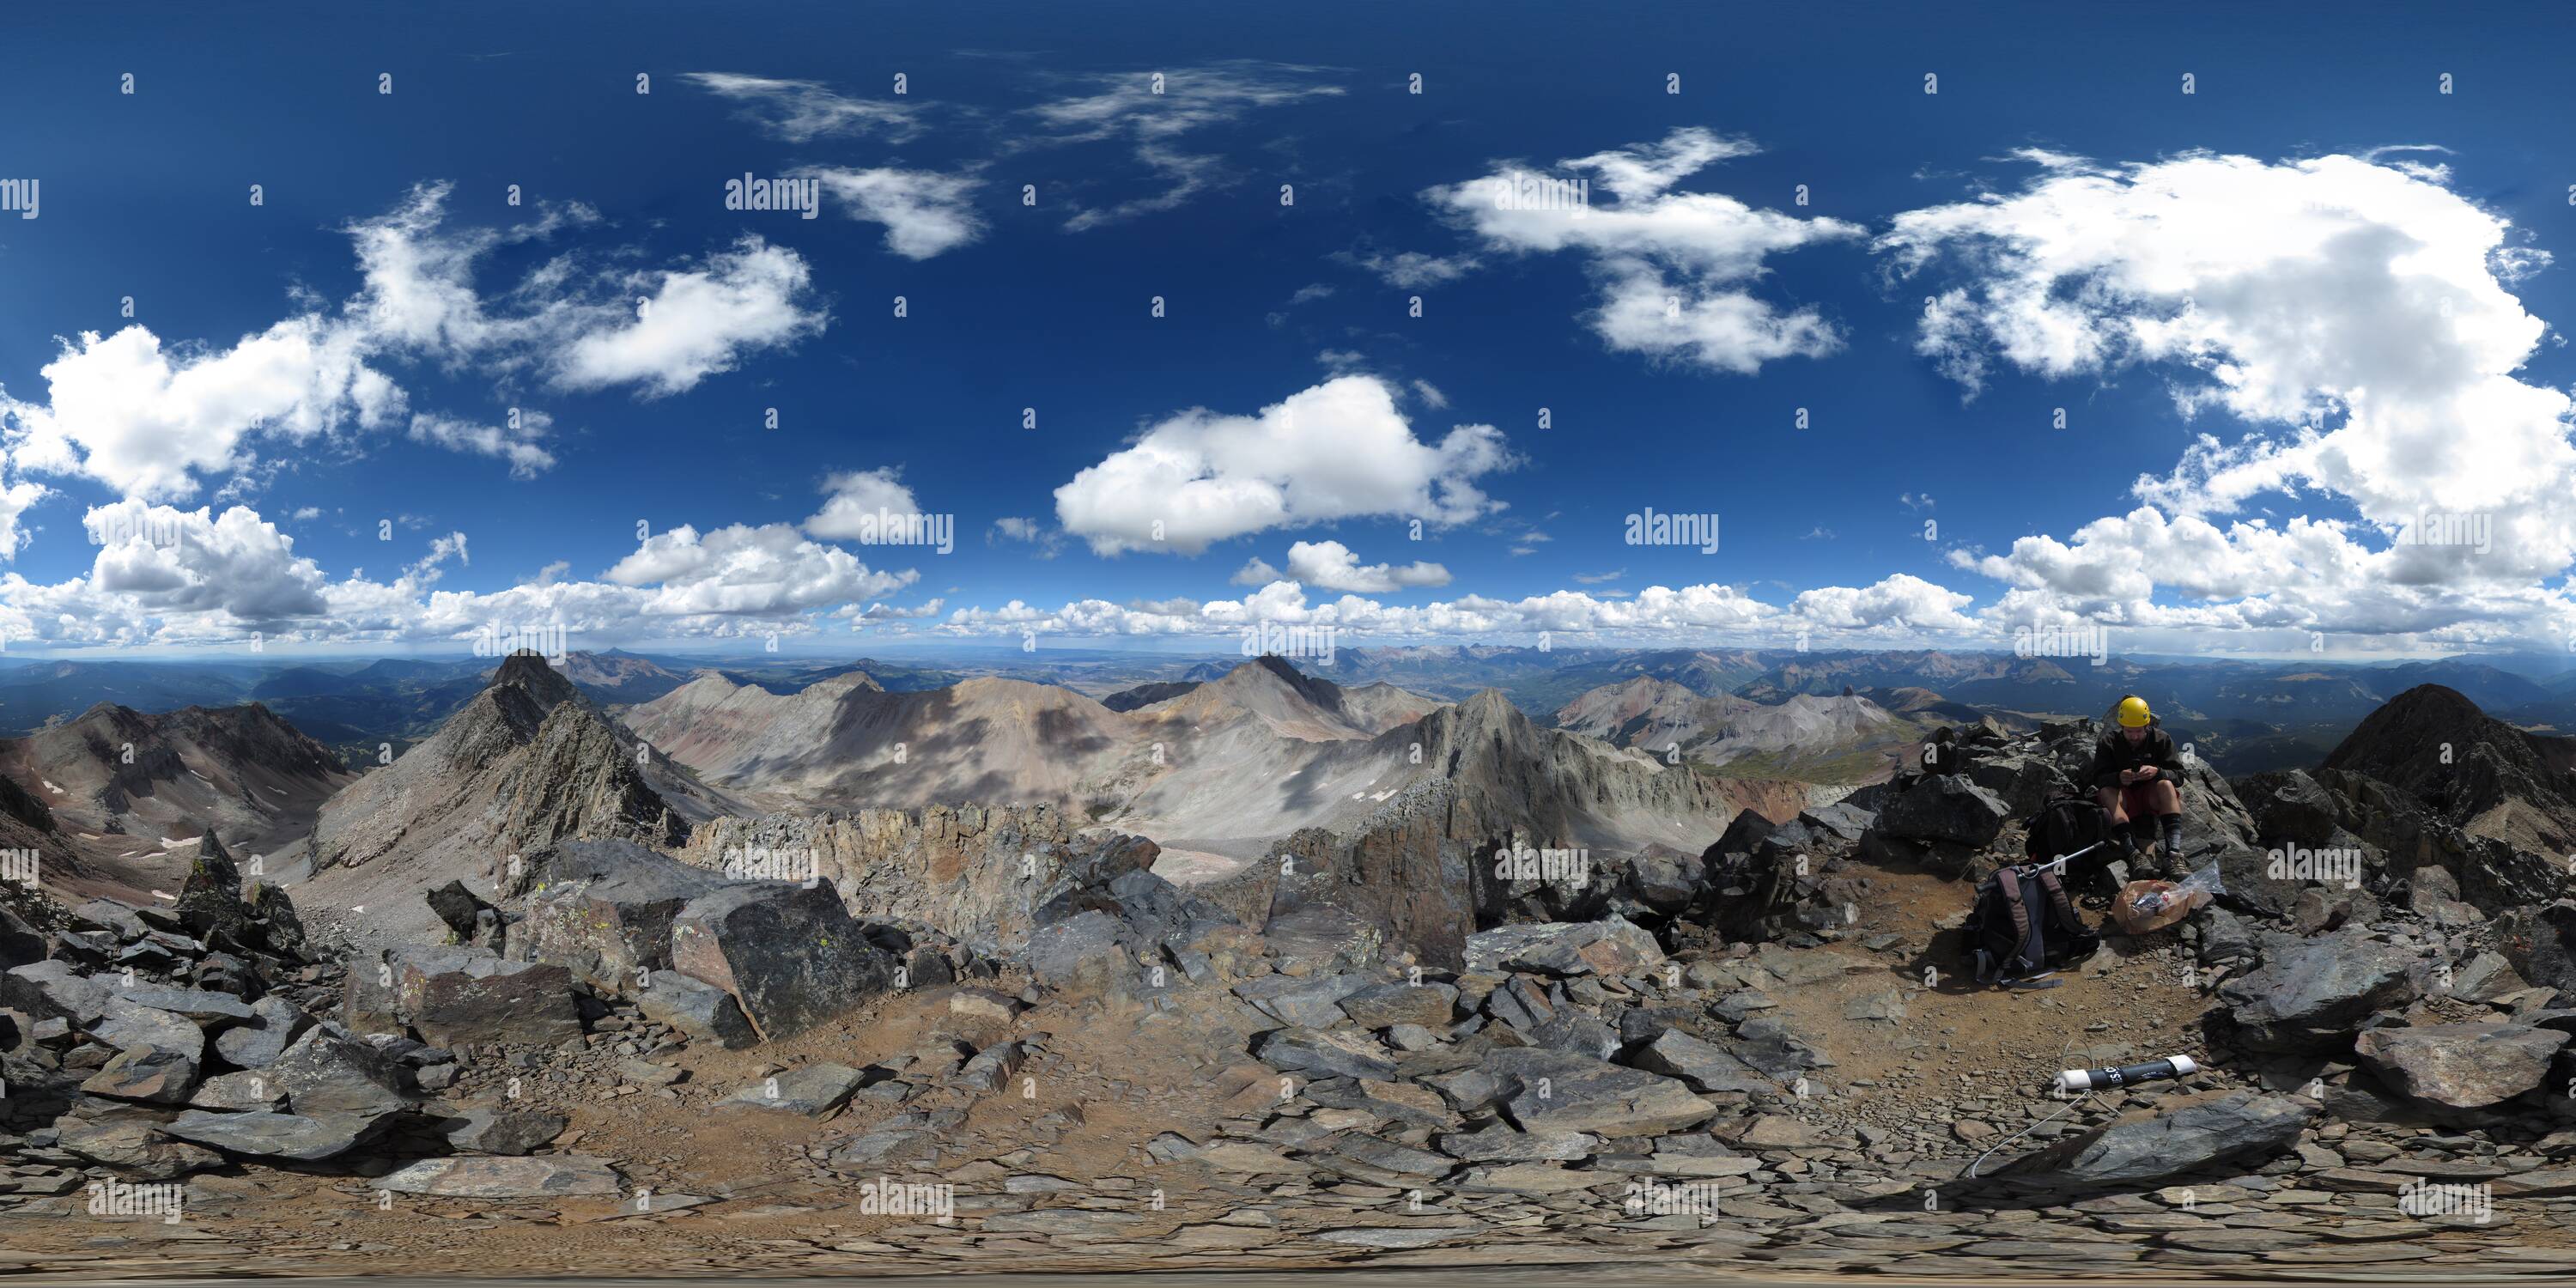 360 degree panoramic view of Mt. Wilson (14246'/4342m) summit